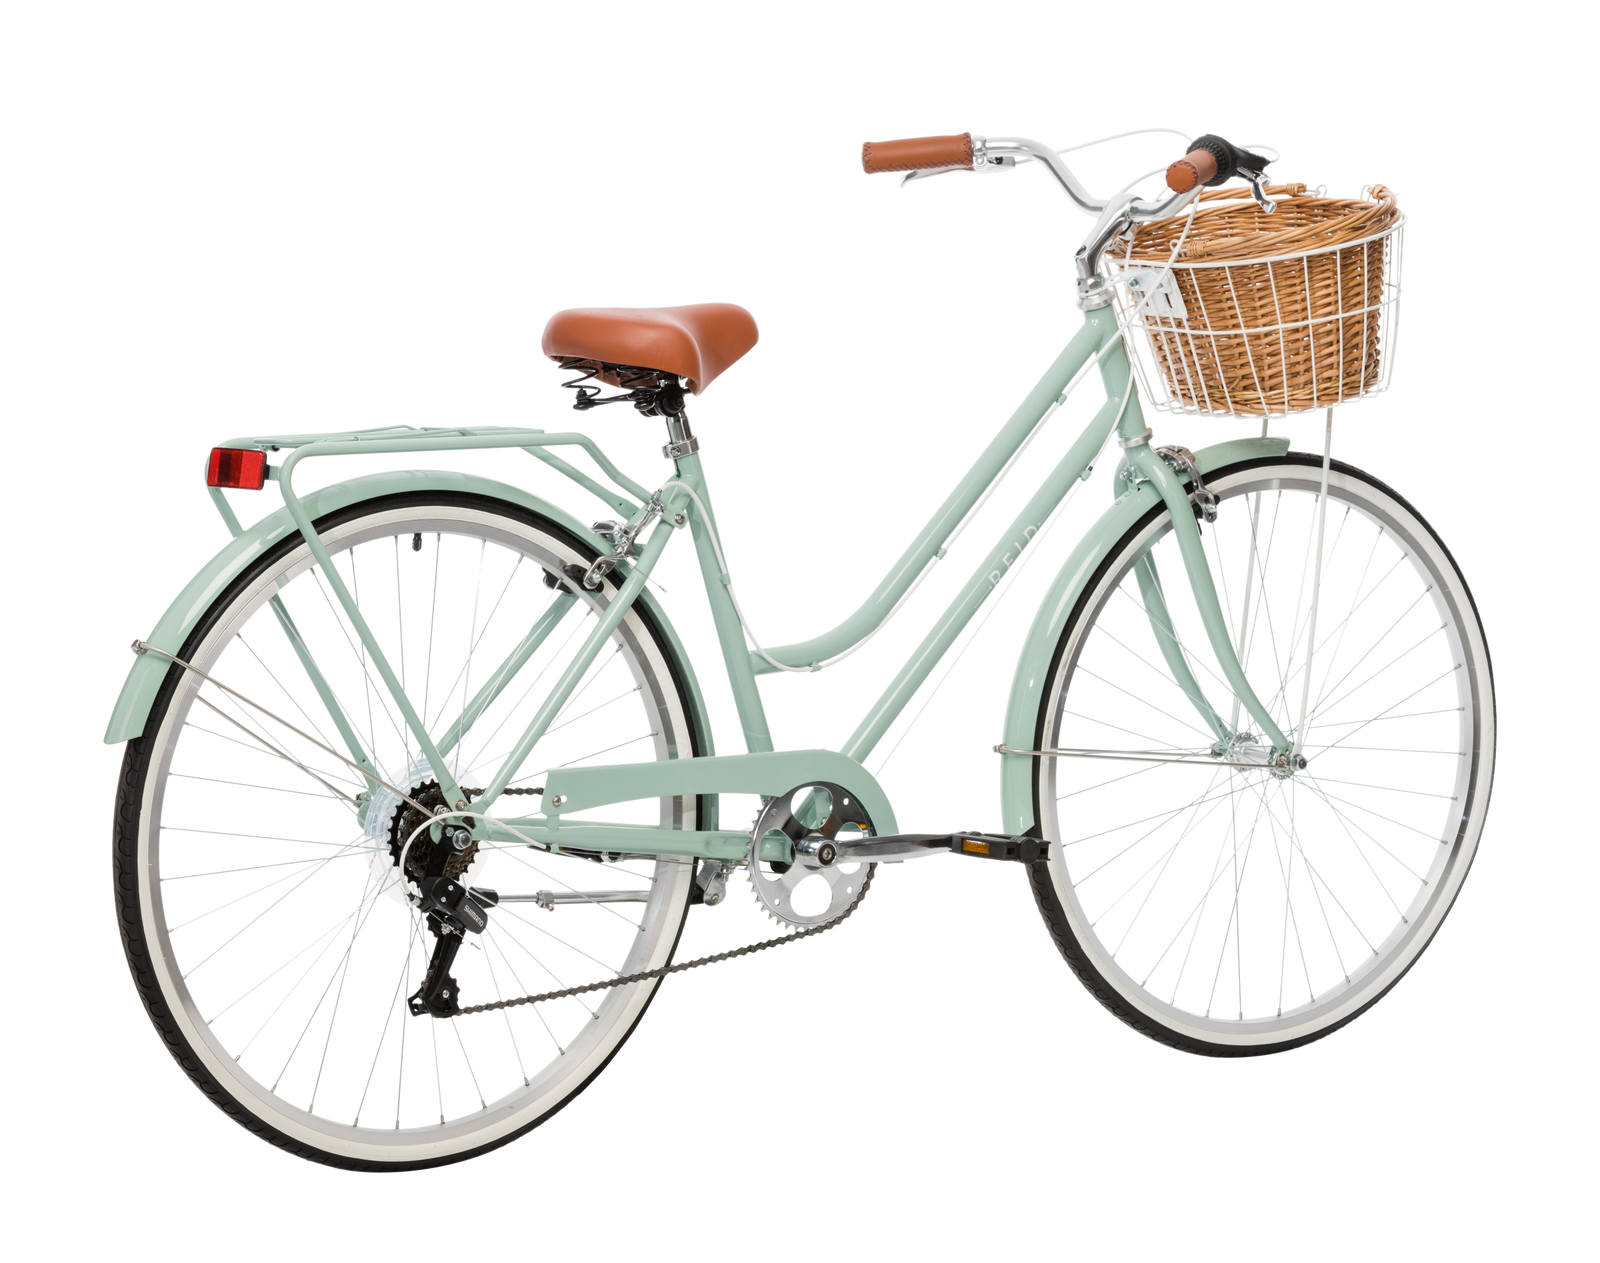 Vintage Ladies Bike With Basket Buy Now Discount 56 Off Wellspringaldershot Uk